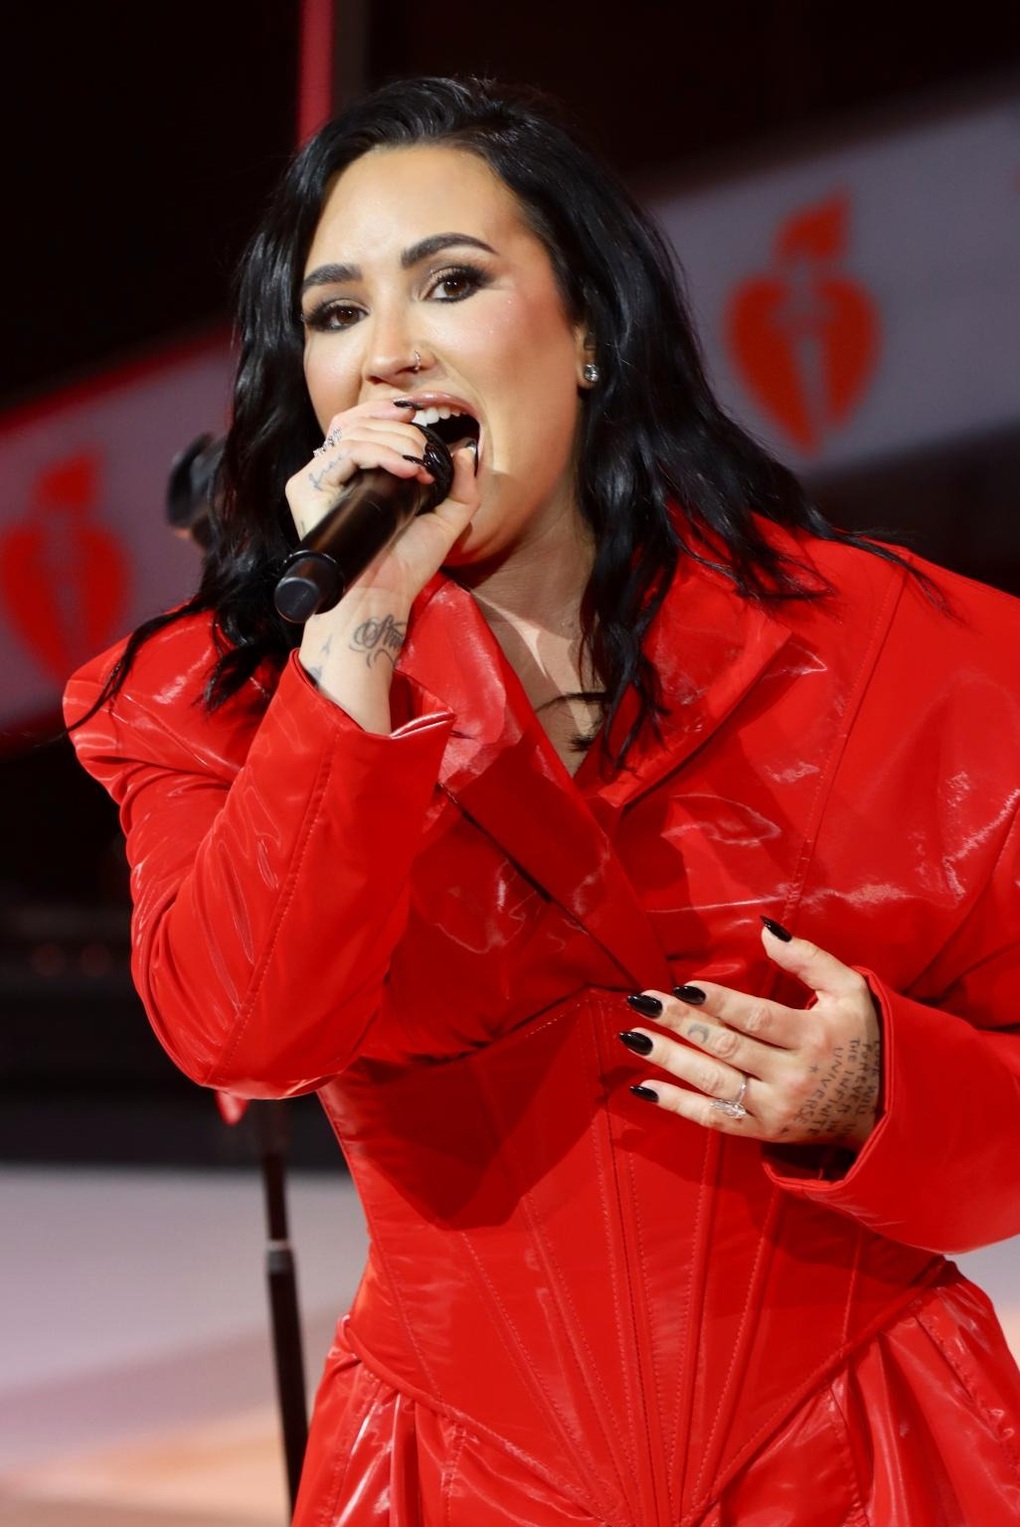 Nữ ca sĩ bị phản ứng vì hát ca khúc Đau tim tại sự kiện của Hội Tim mạch - 3